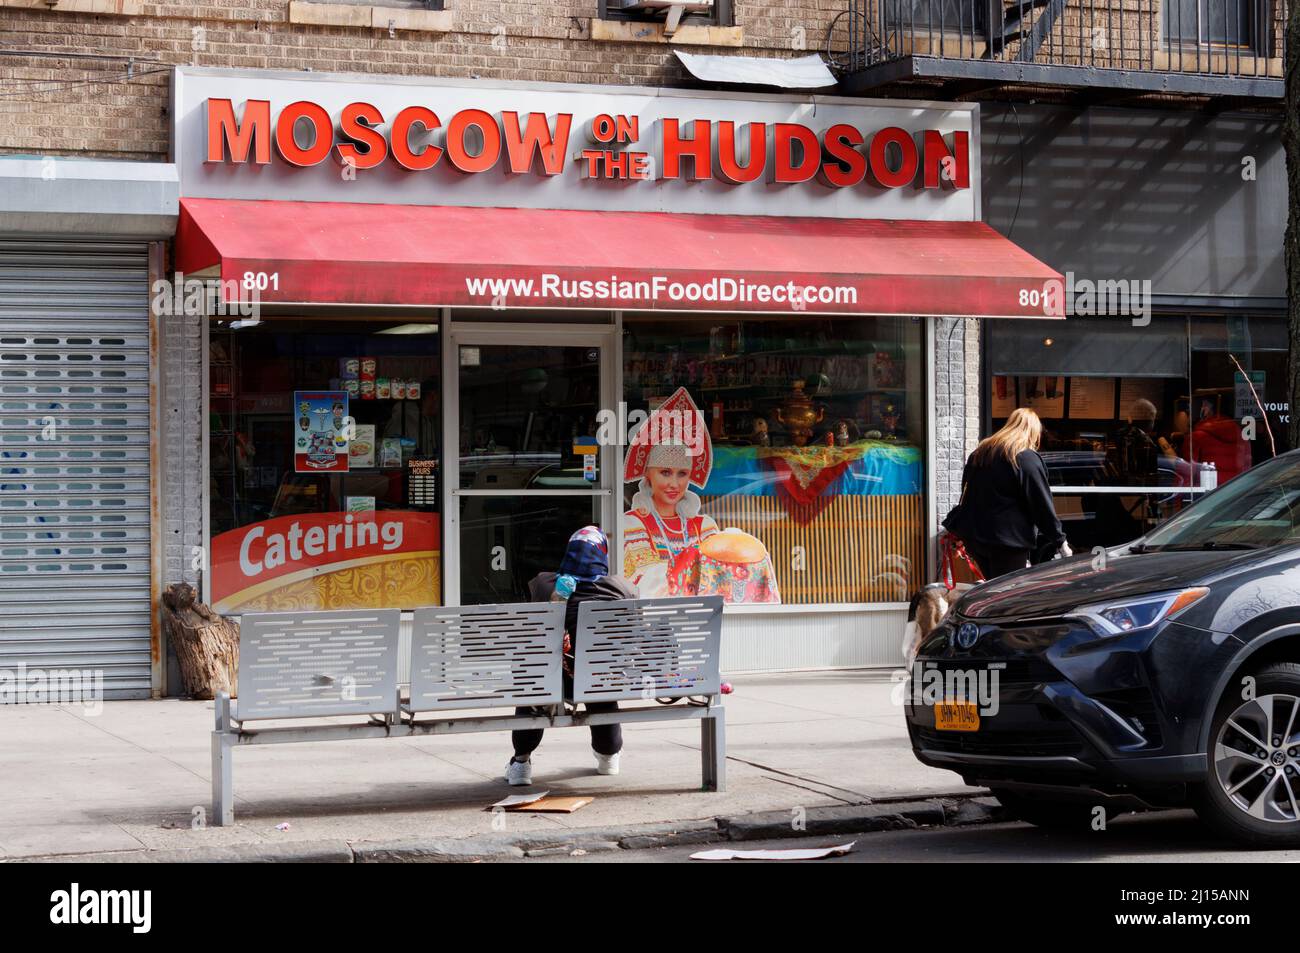 Moscú en el Hudson, una tienda de comida rusa ubicada en el 181st st. En la sección de Wasington Heights del norte de Manhattan, Nueva York Foto de stock